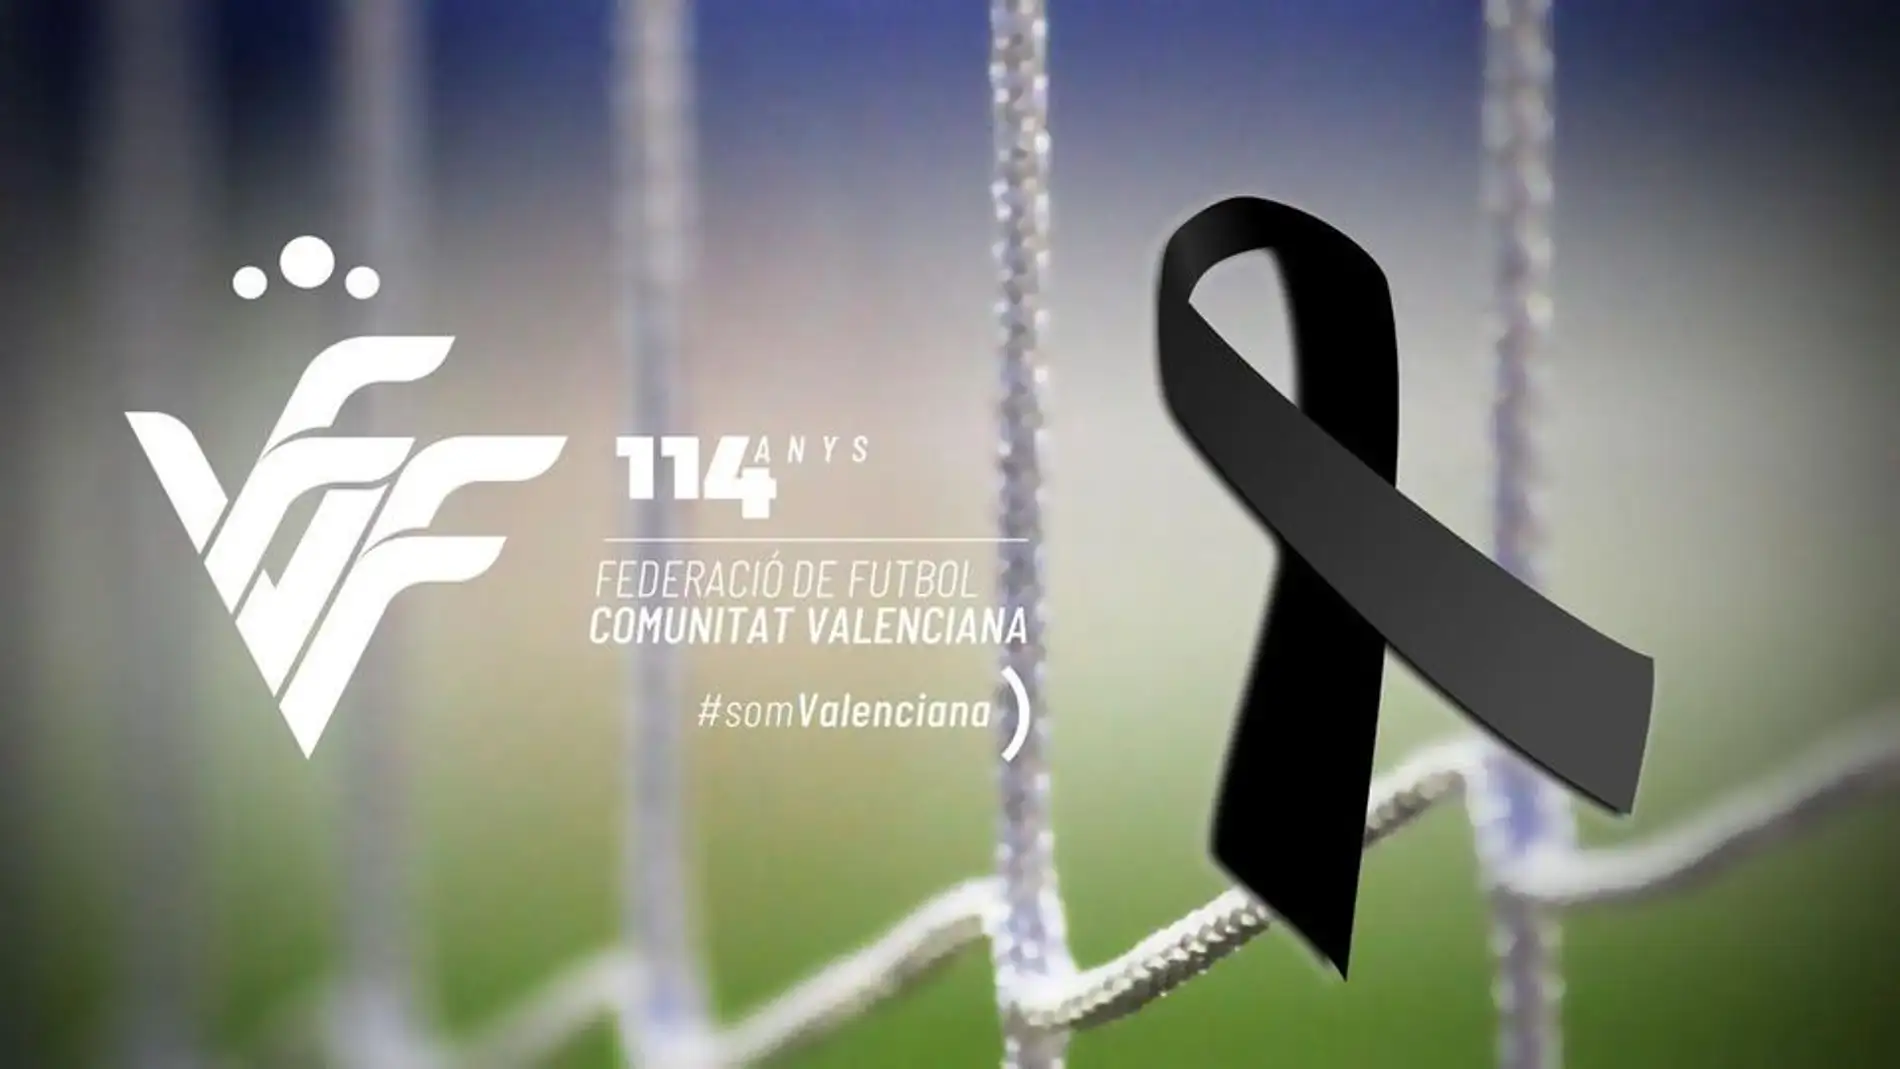 Los clubes buscan fecha para disputar los partidos suspendidos por la federación por le incendio de Valencia